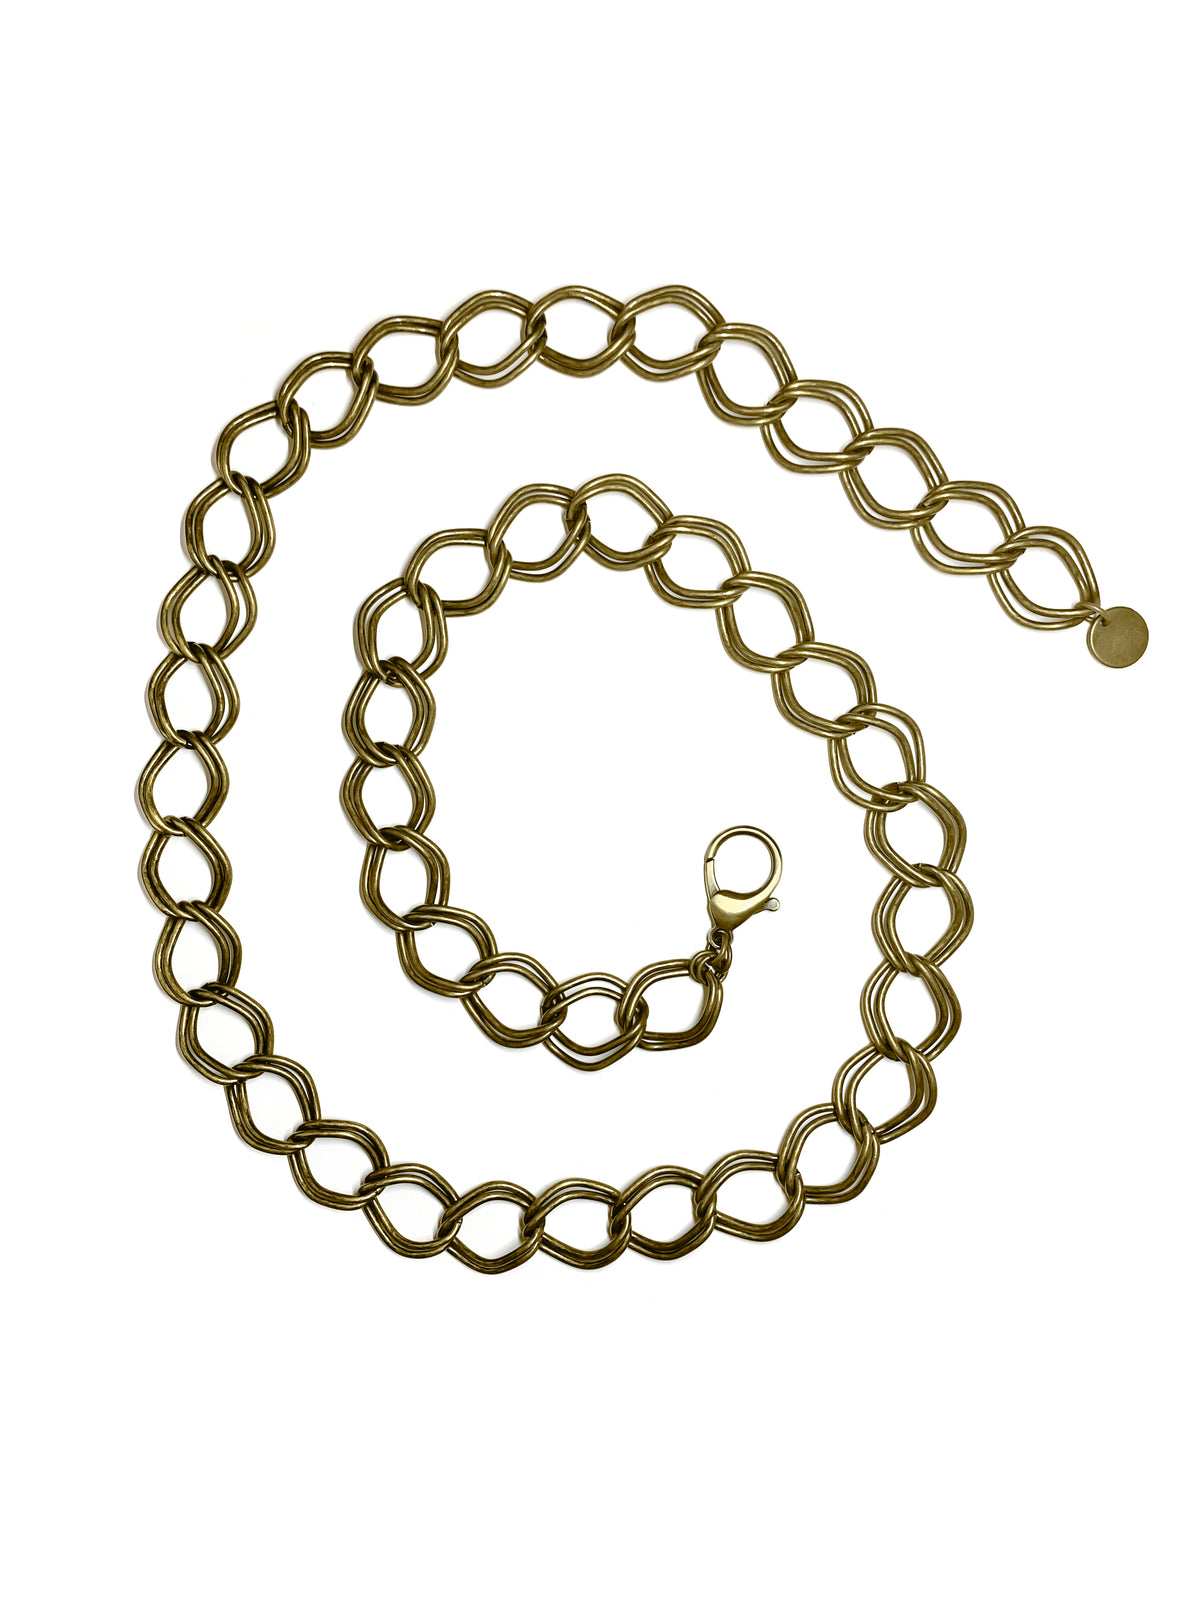 Gold waist chain for women.